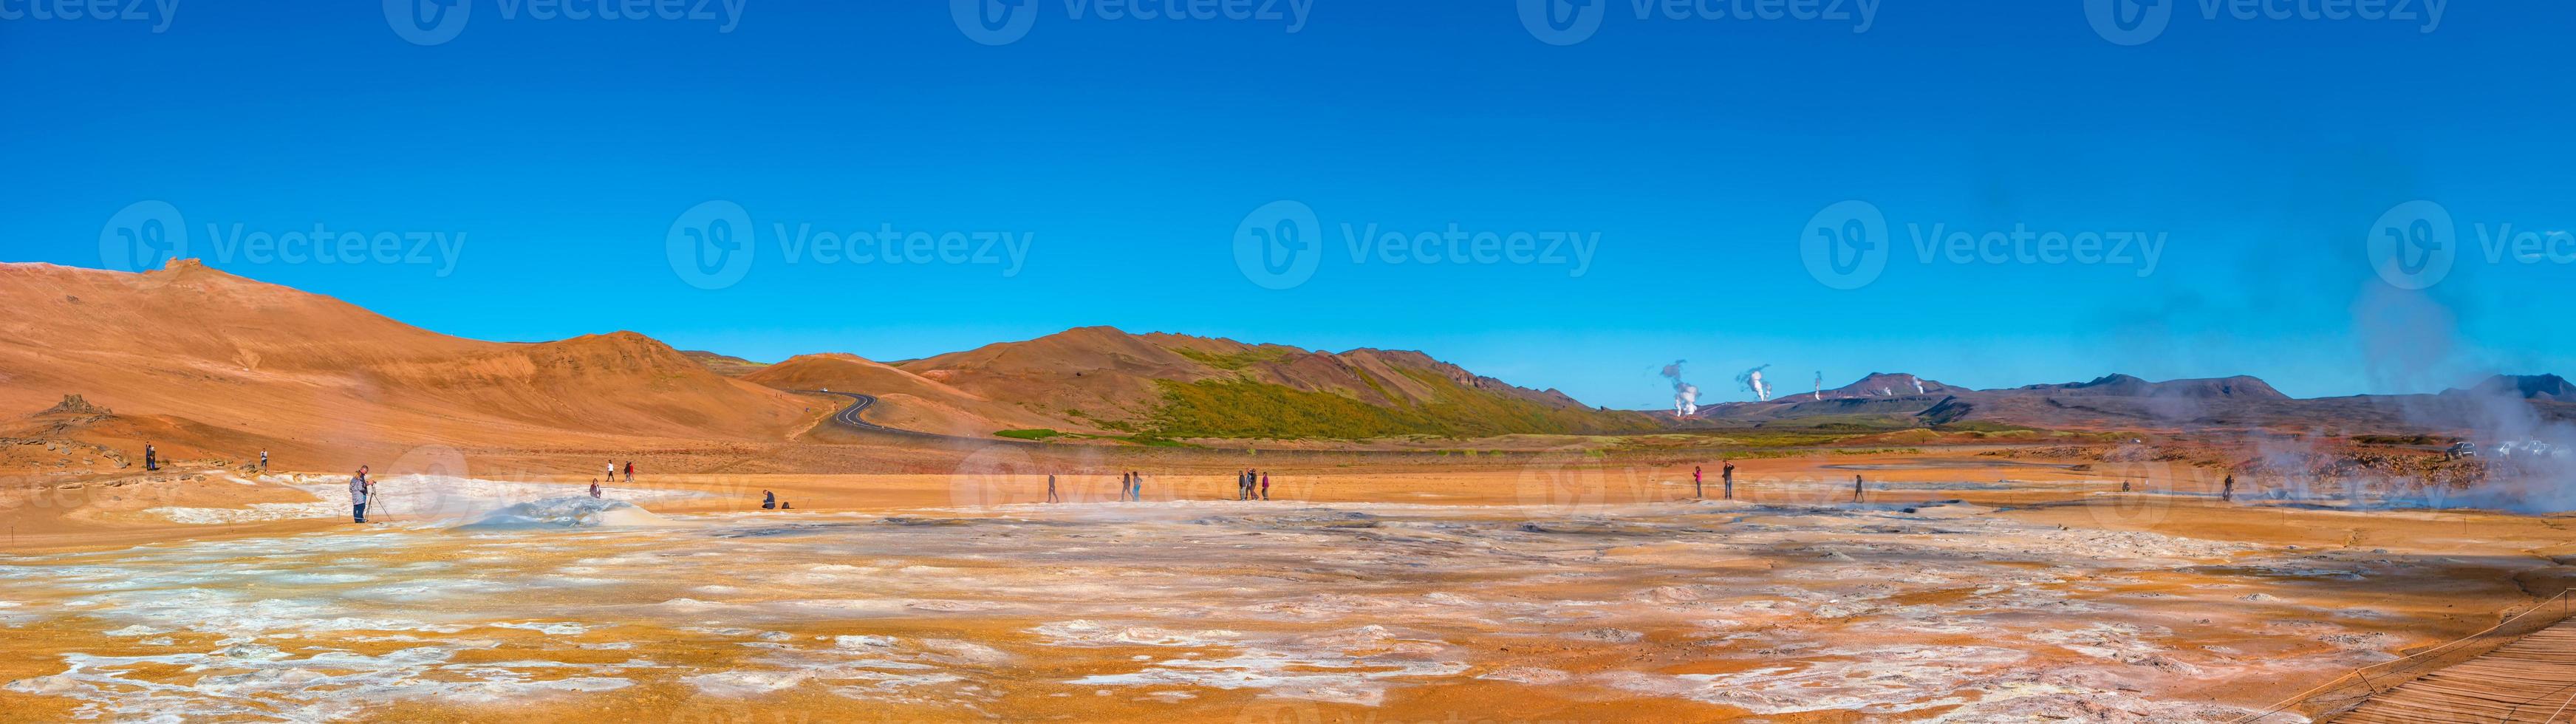 vista panorâmica sobre a zona ativa geotérmica colorida hverir perto do lago myvatn na islândia, assemelhando-se à paisagem do planeta vermelho marciano, no verão e céu azul foto